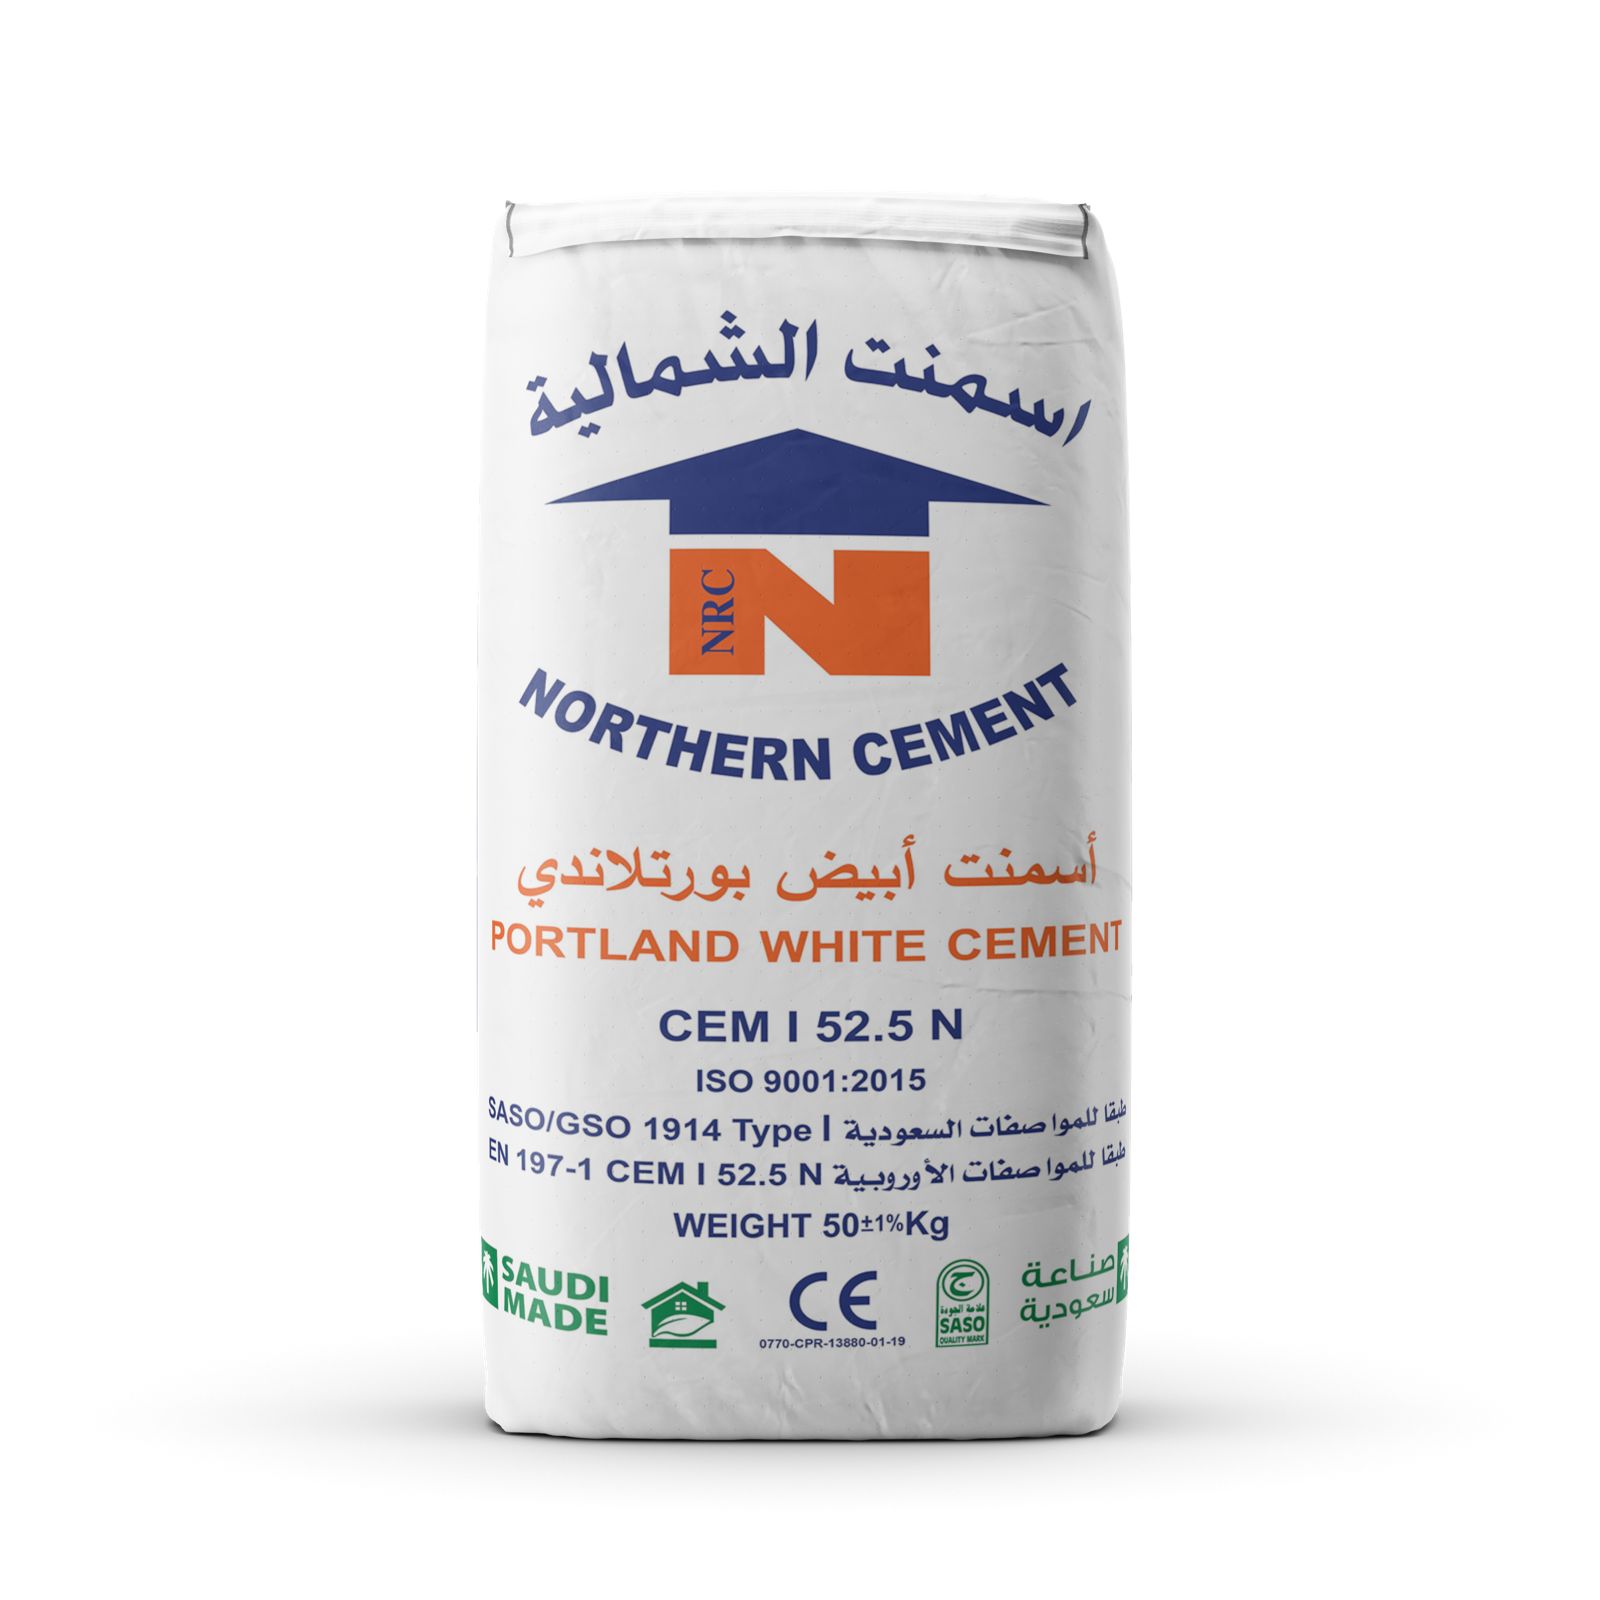 Nothern Cement-White Cement Bag Voucher 